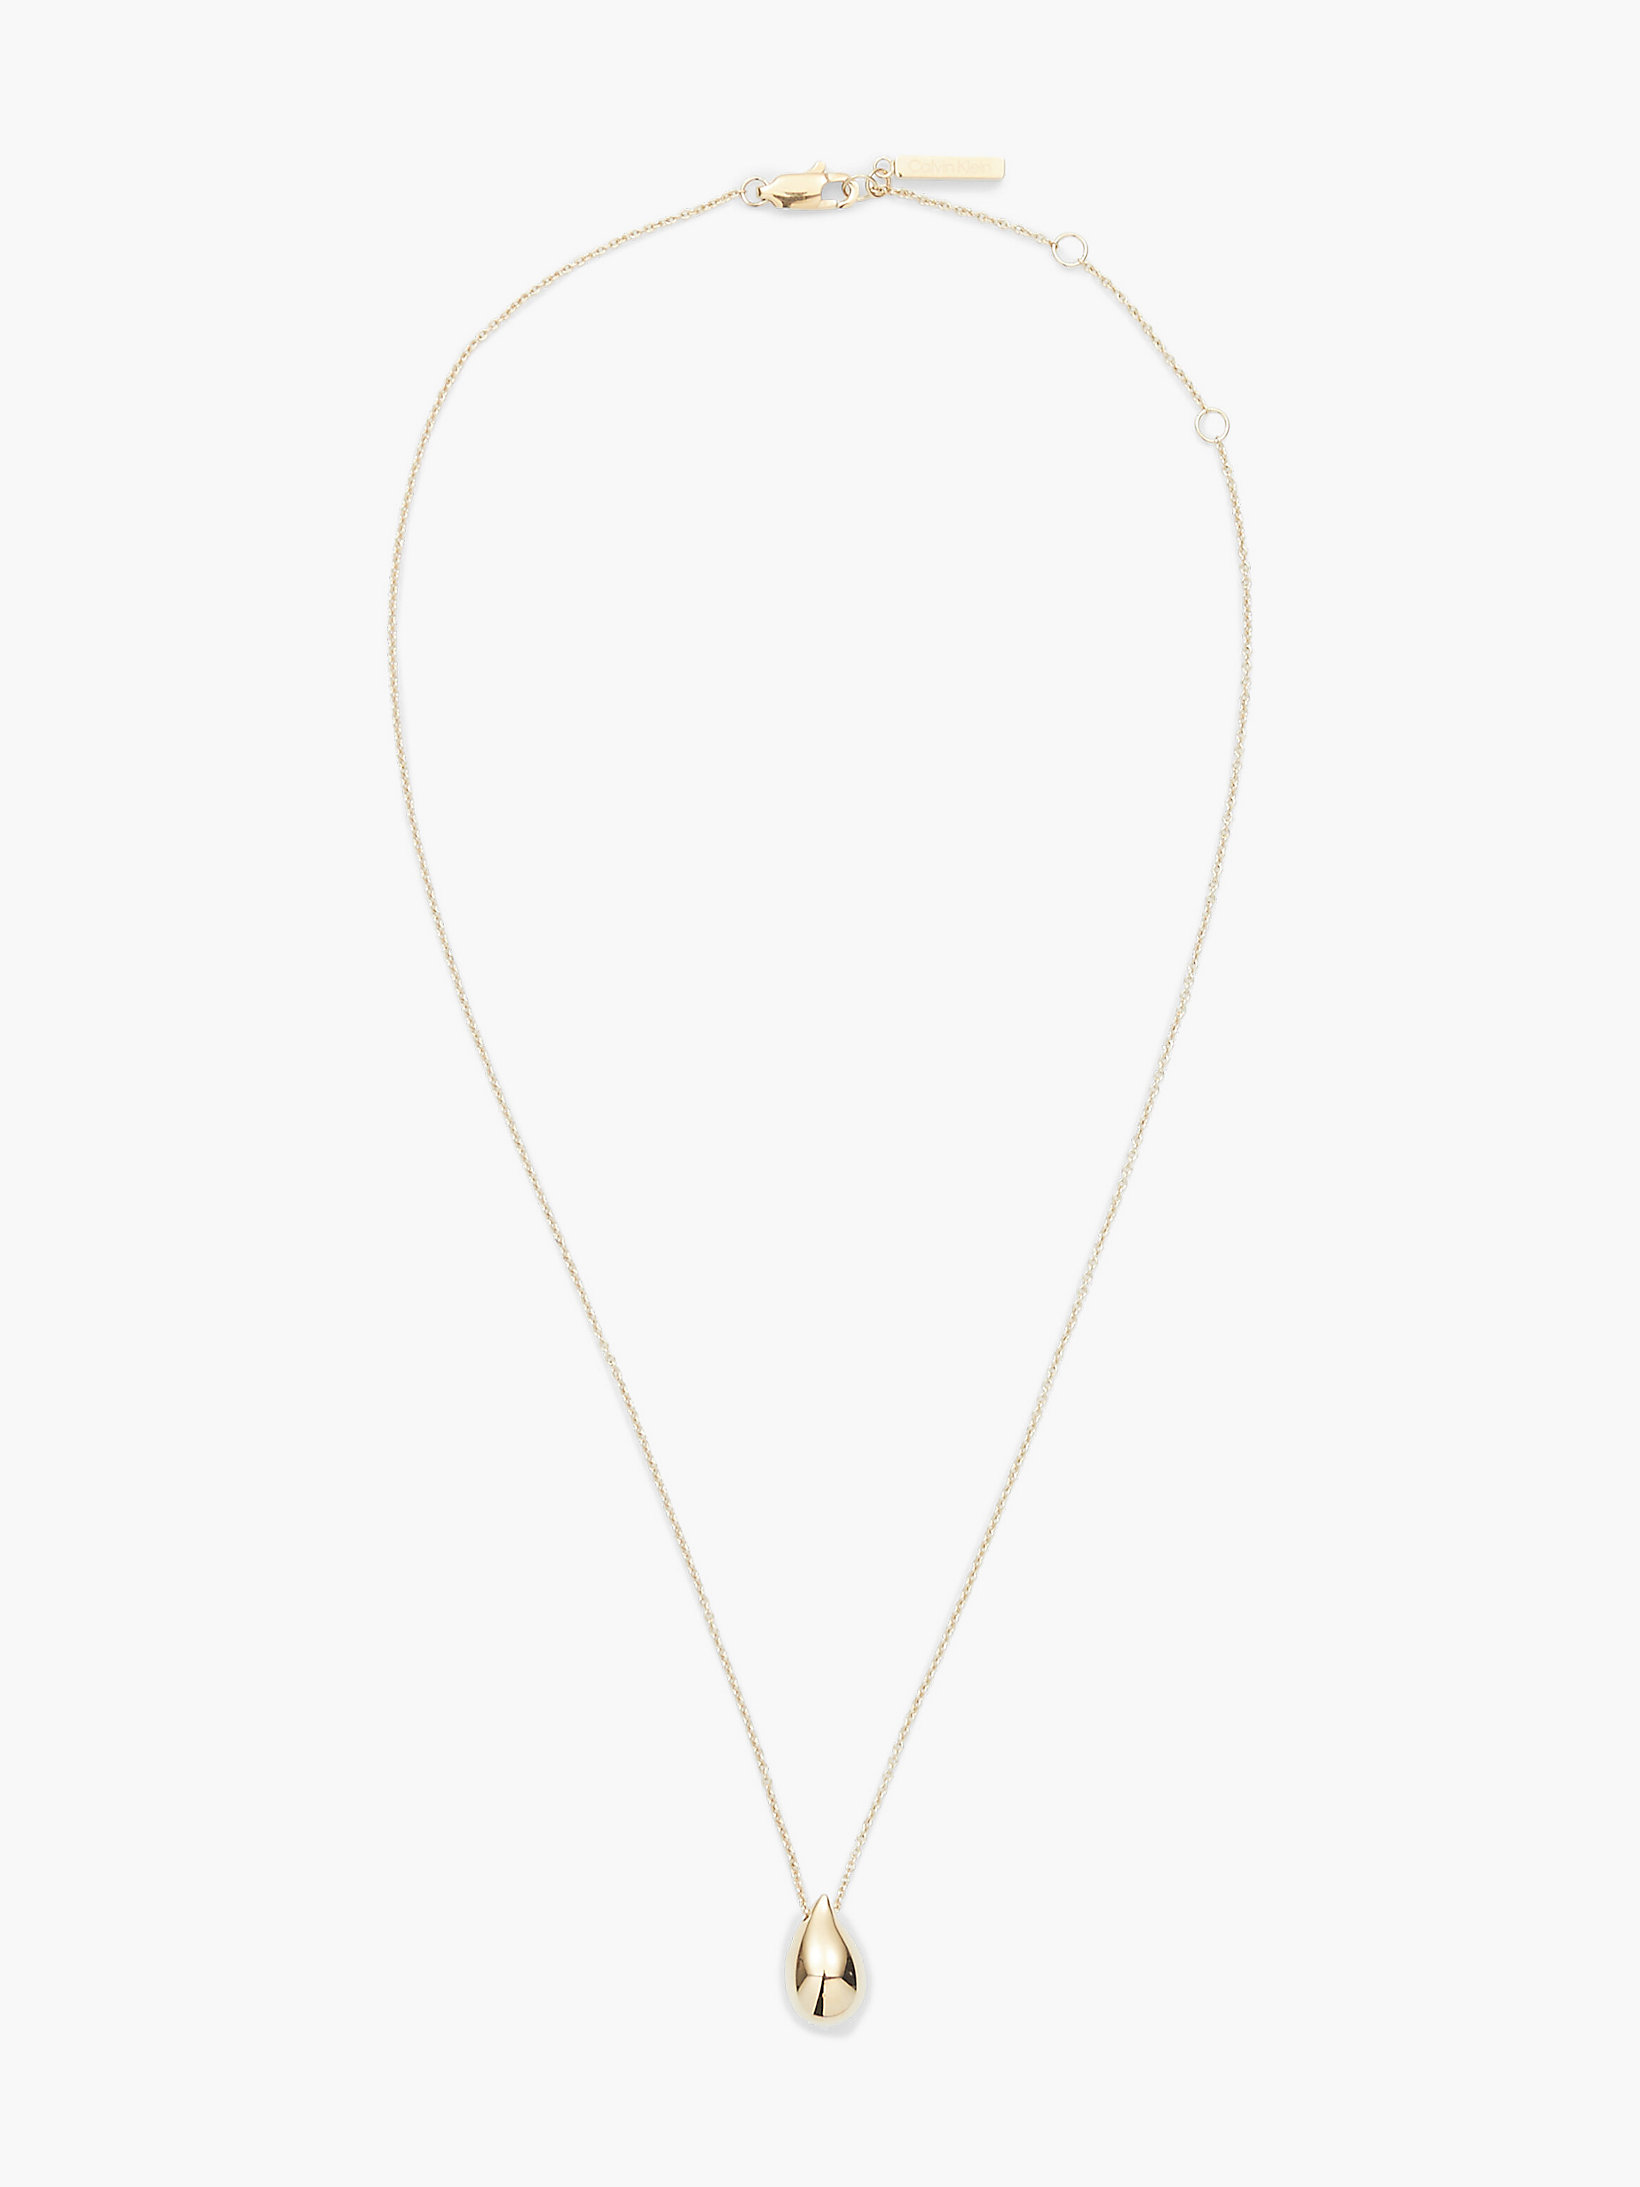 Gold Necklace - Sculptured Drops undefined women Calvin Klein